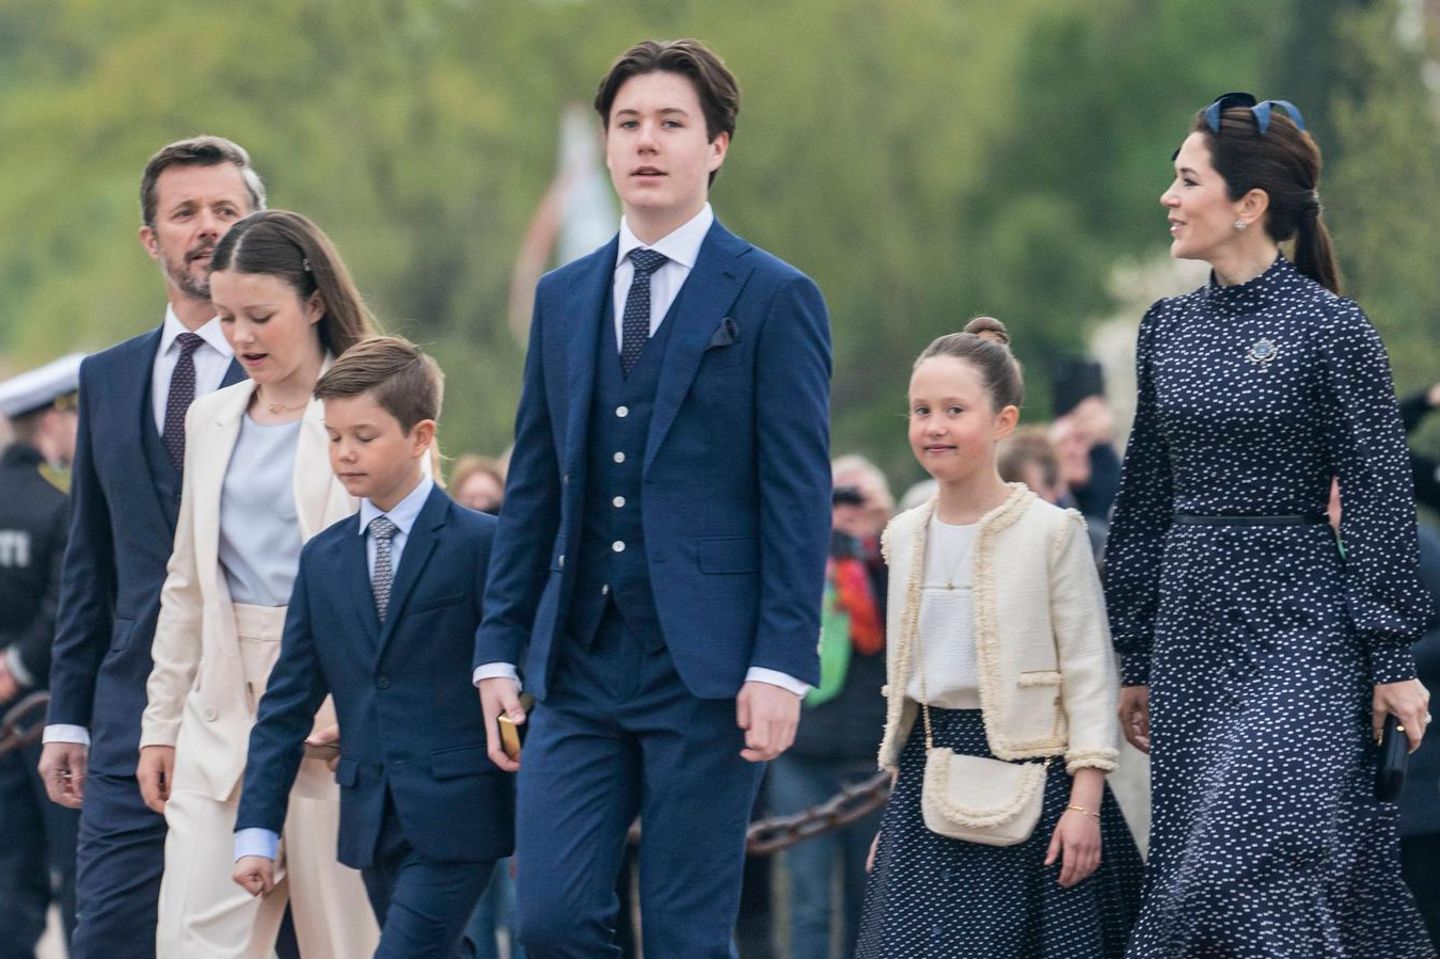 Prinz Christian (Mitte) mit seinen Eltern Prinz Frederik und Prinzessin Mary und den Geschwistern Prinzessin Isabella (2.v.l.), Prinz Vincent und Prinzessin Josephine